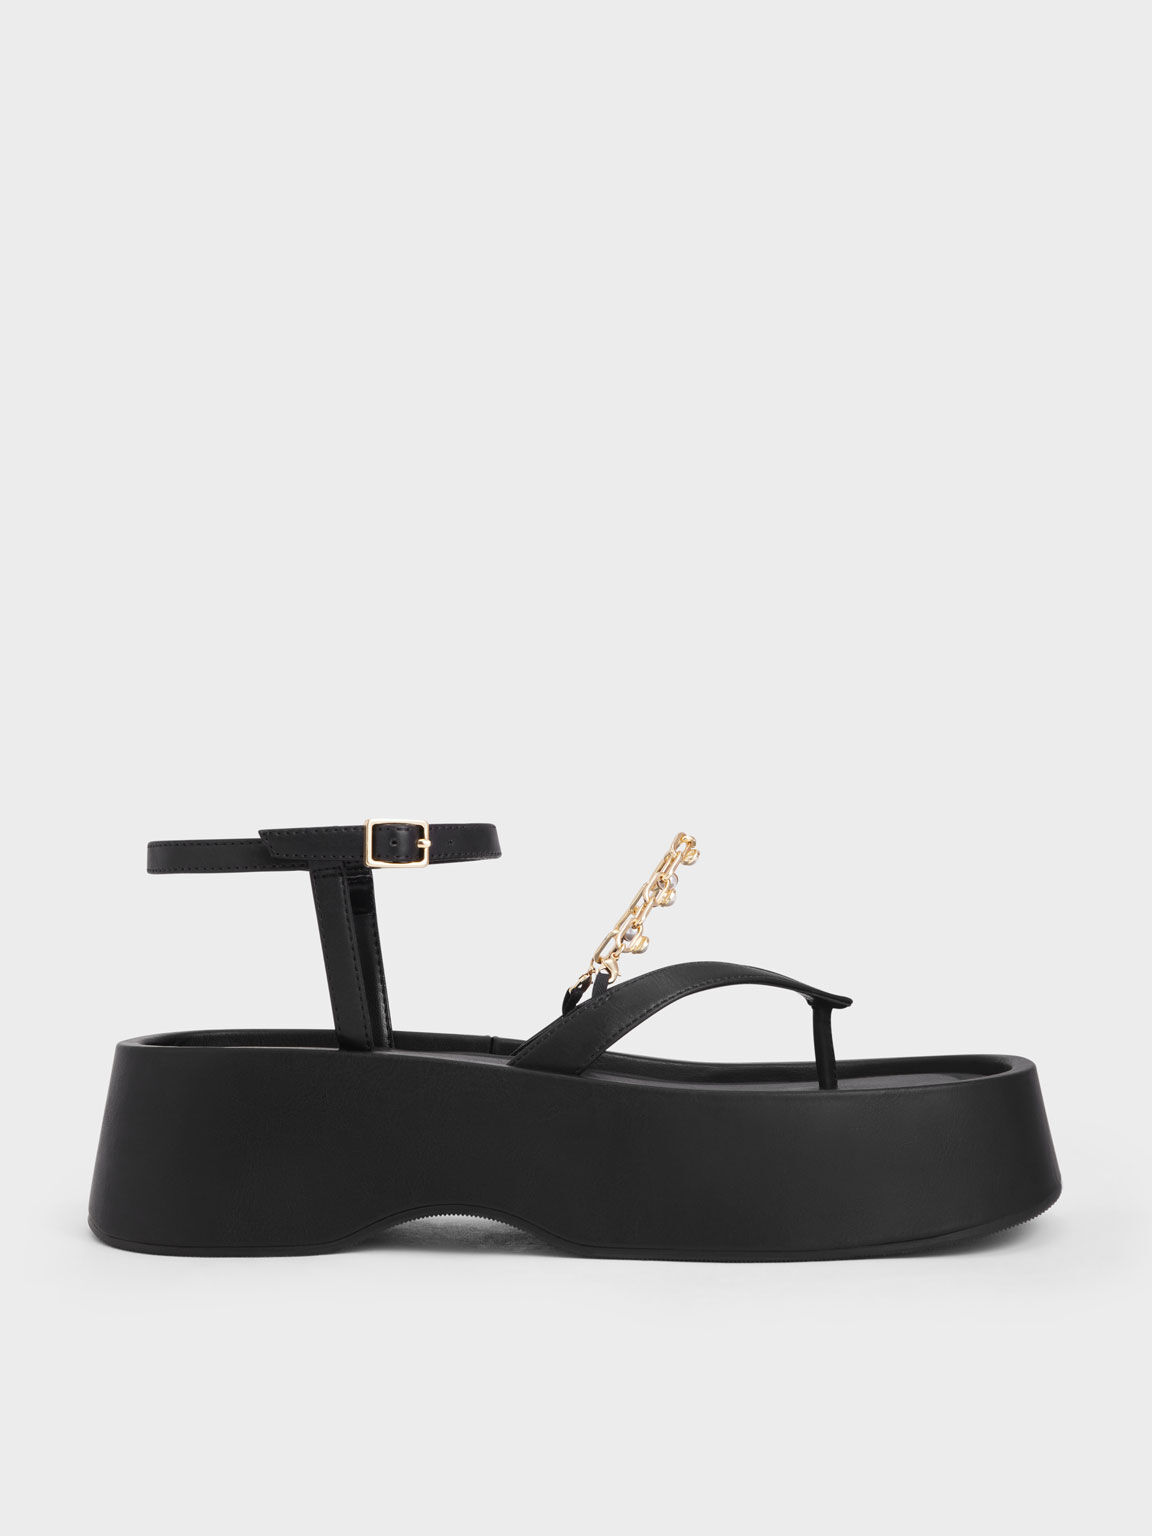 Sandal Flatforms Savannah Chain-Embellished Ankle-Strap, Black, hi-res